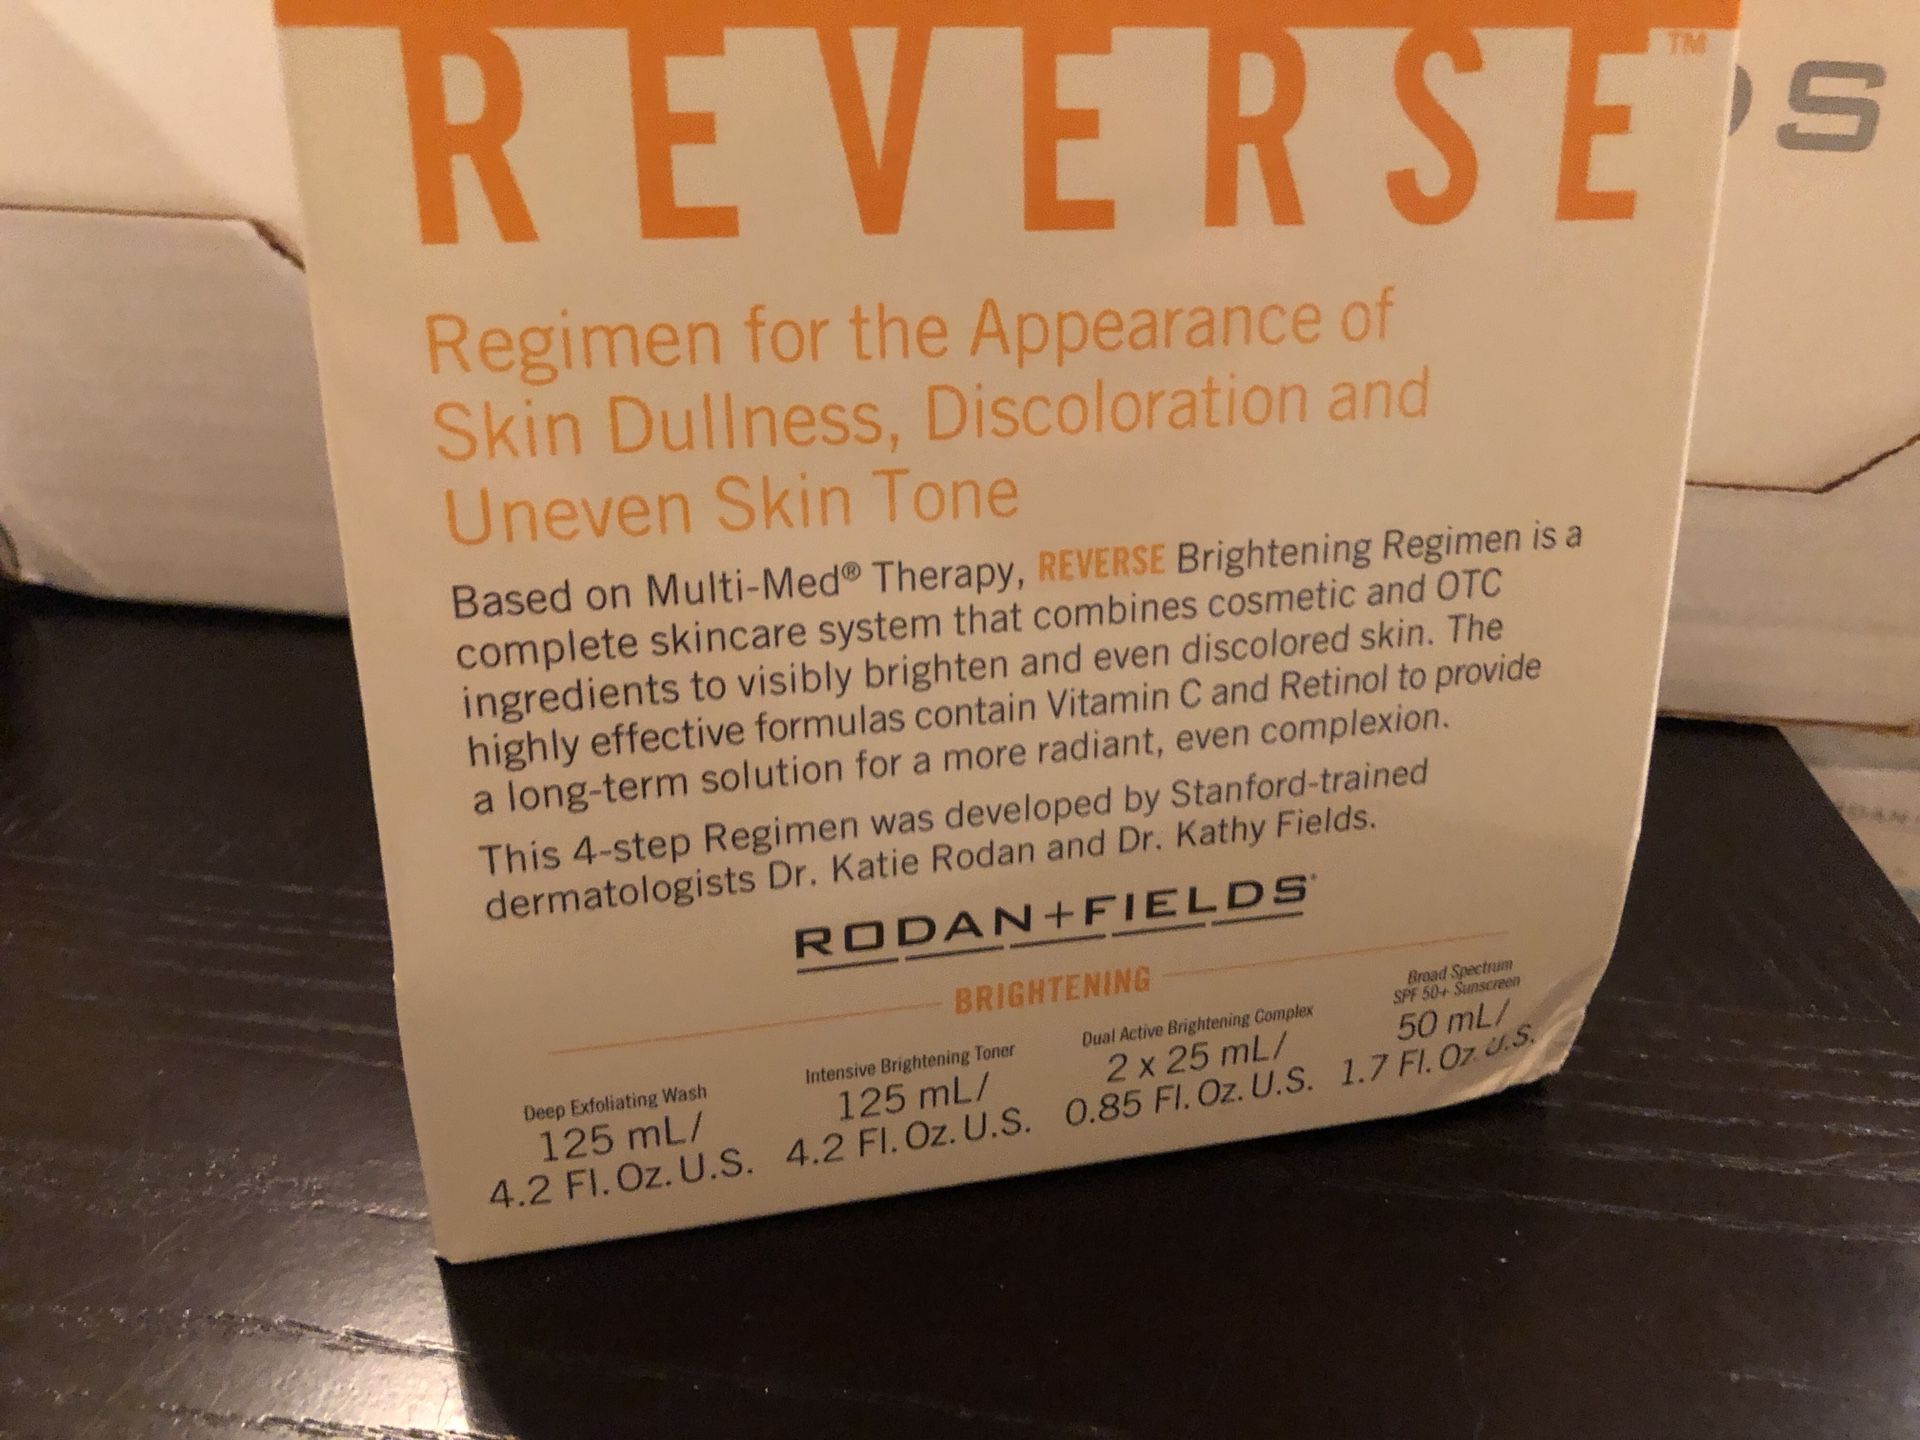 Brand new REVERSE regimen from Rodan+Fields